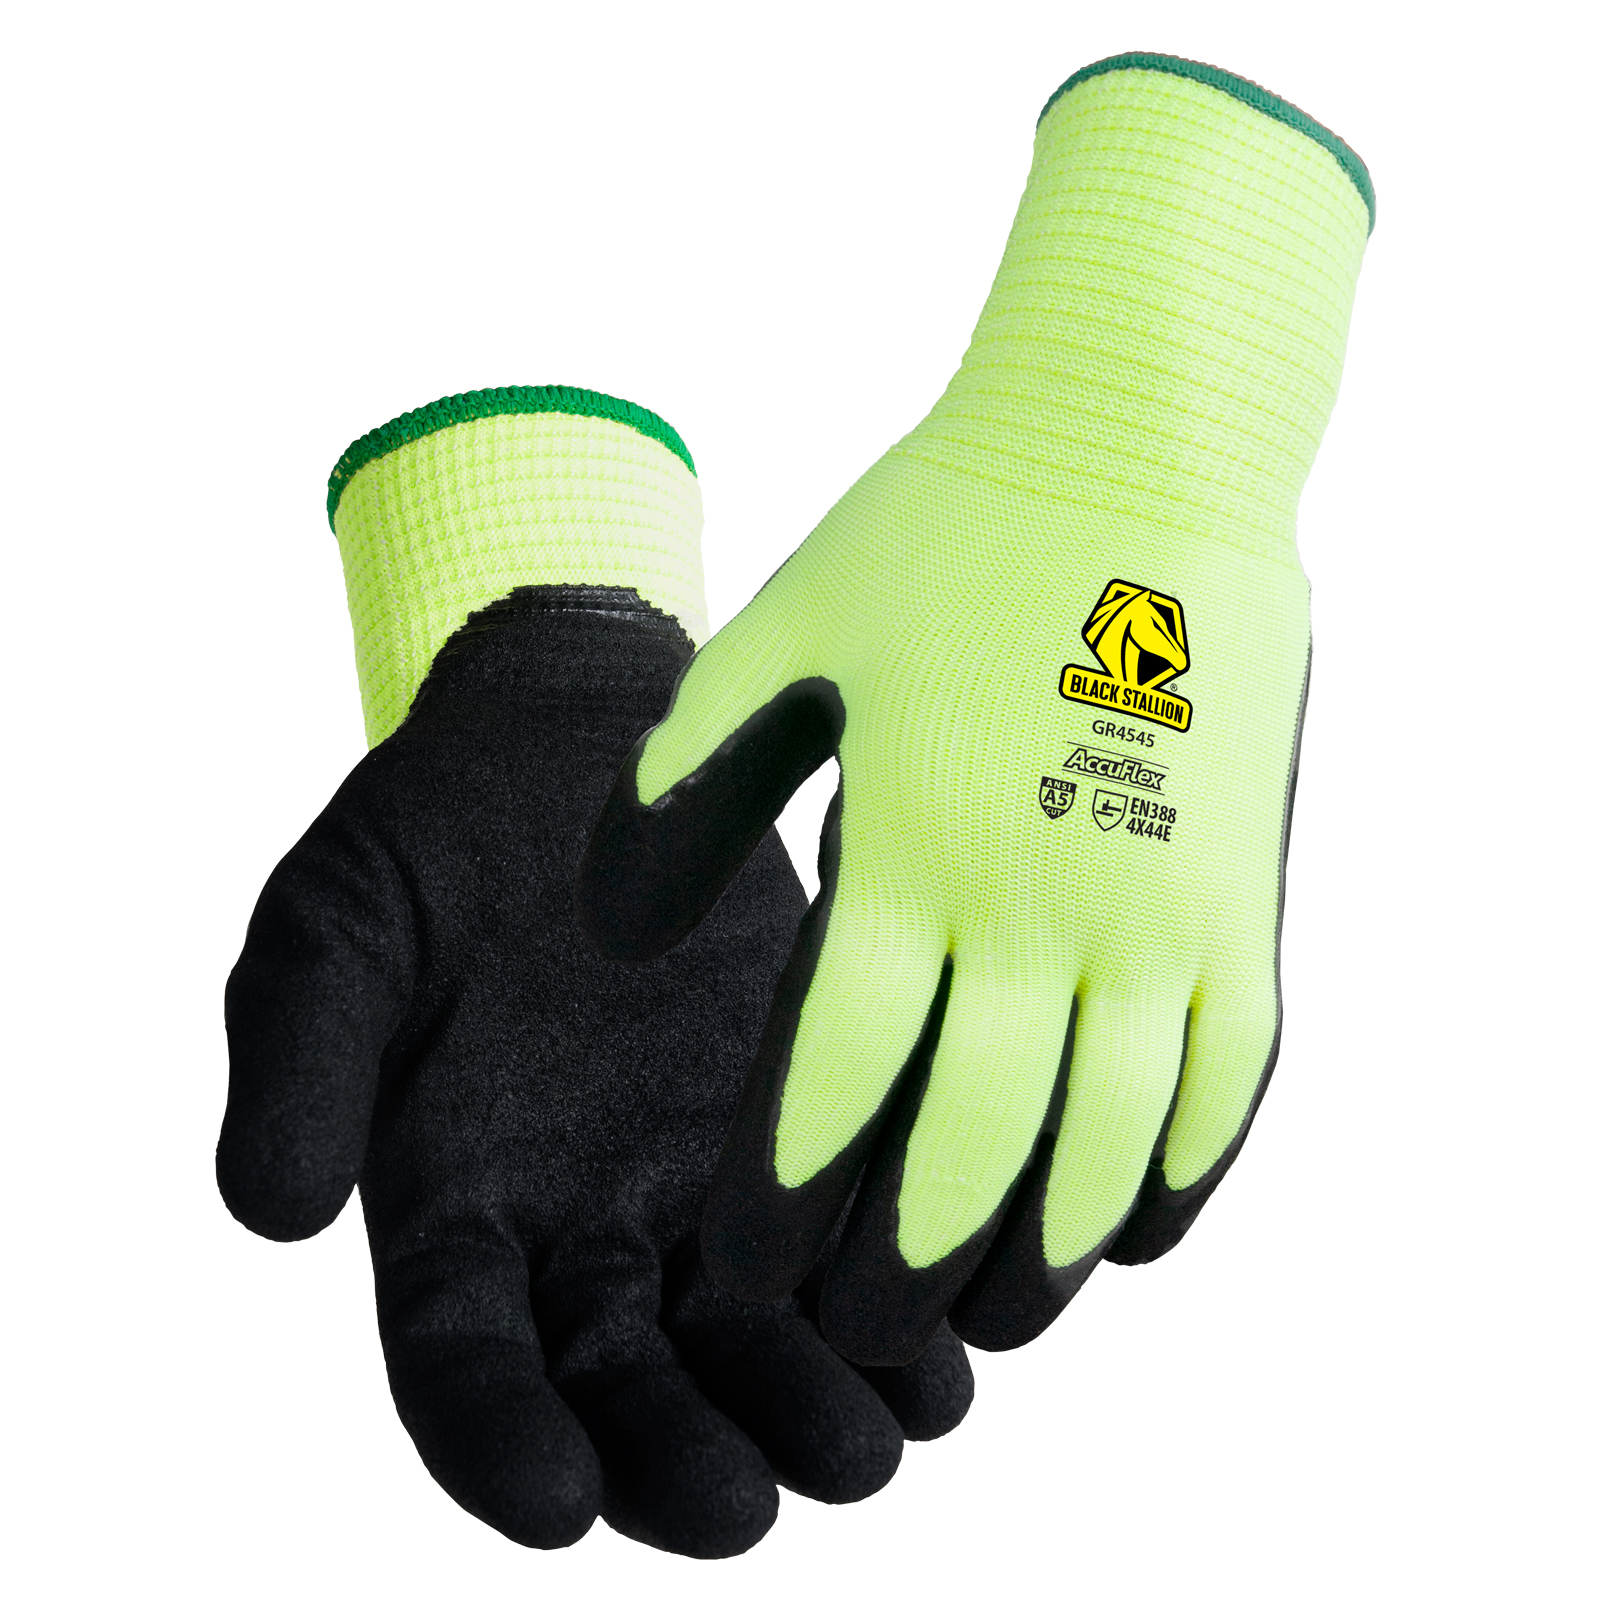 Revco Black Stallion A5 Cut Resistant Thermal Sandy Nitrile Coated Hi-Vis Hppe Blend Glove #GR4545-HB